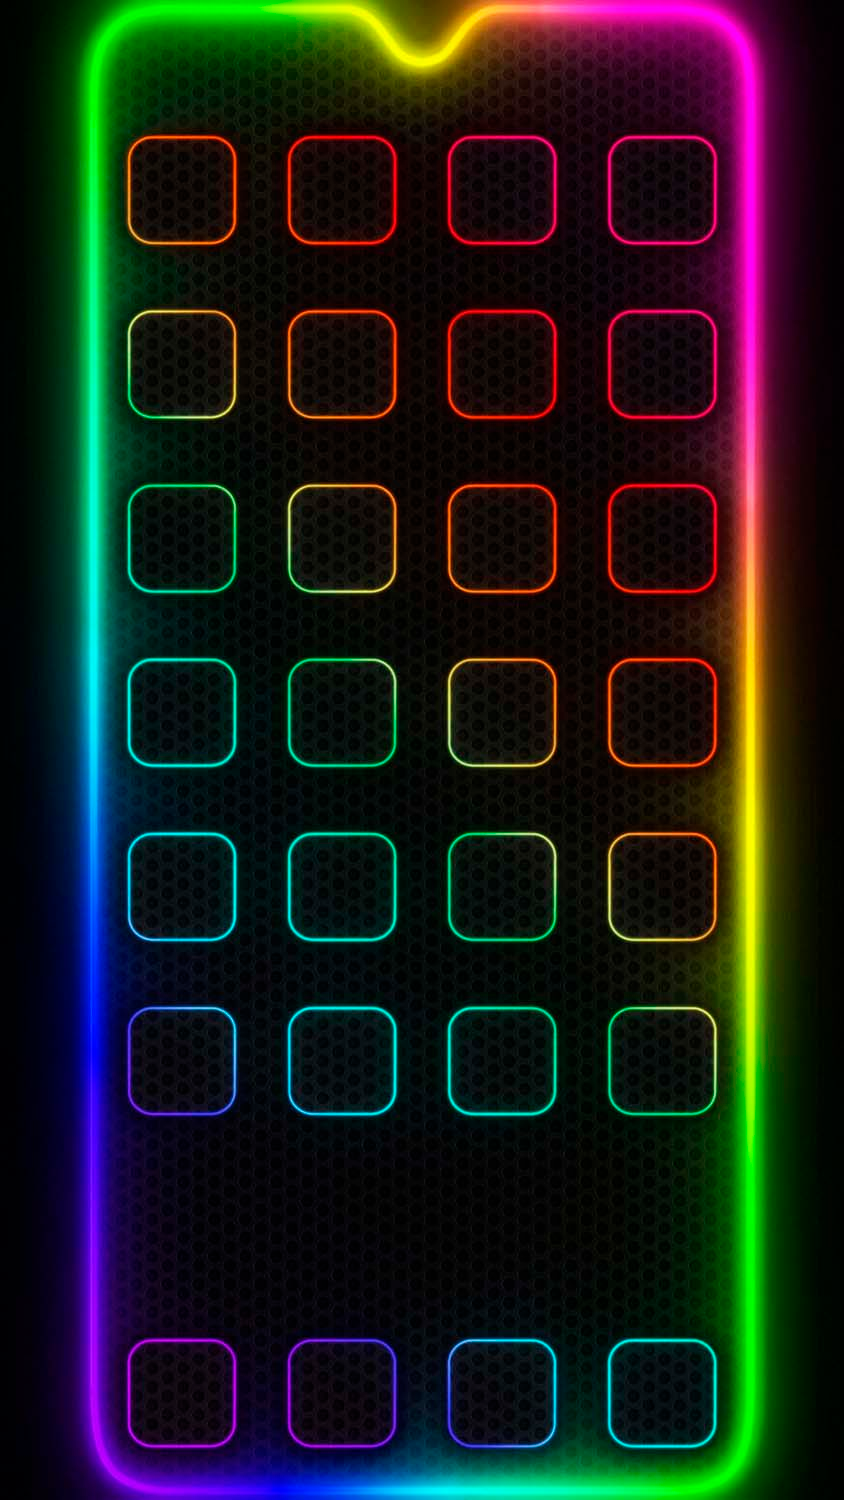 Neon App Dock Icons Wallpaper  iPhone Wallpapers